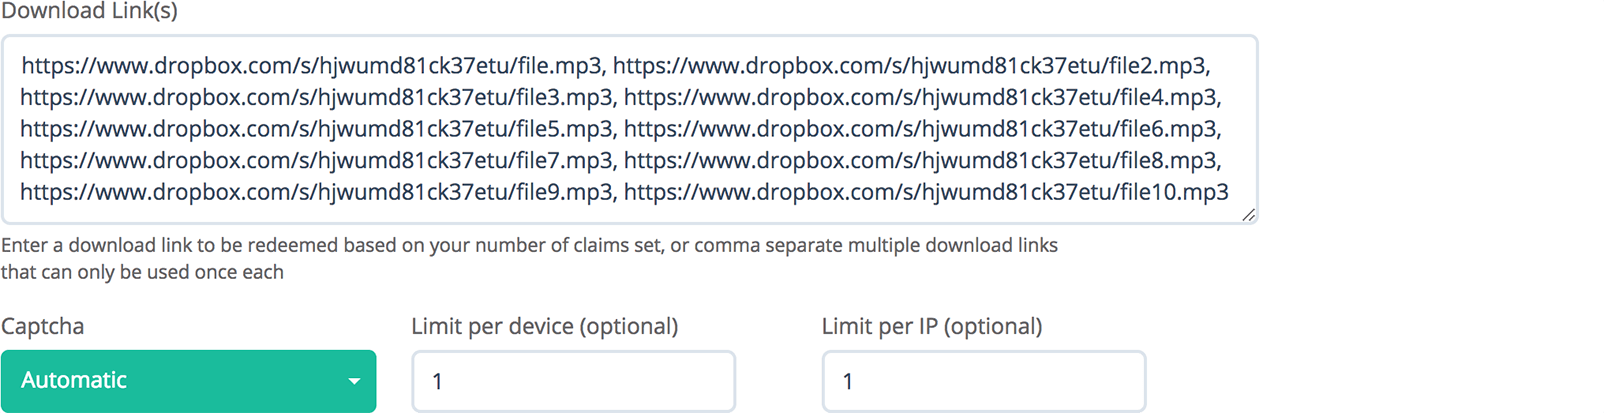 Enter URLs for multiple downloads